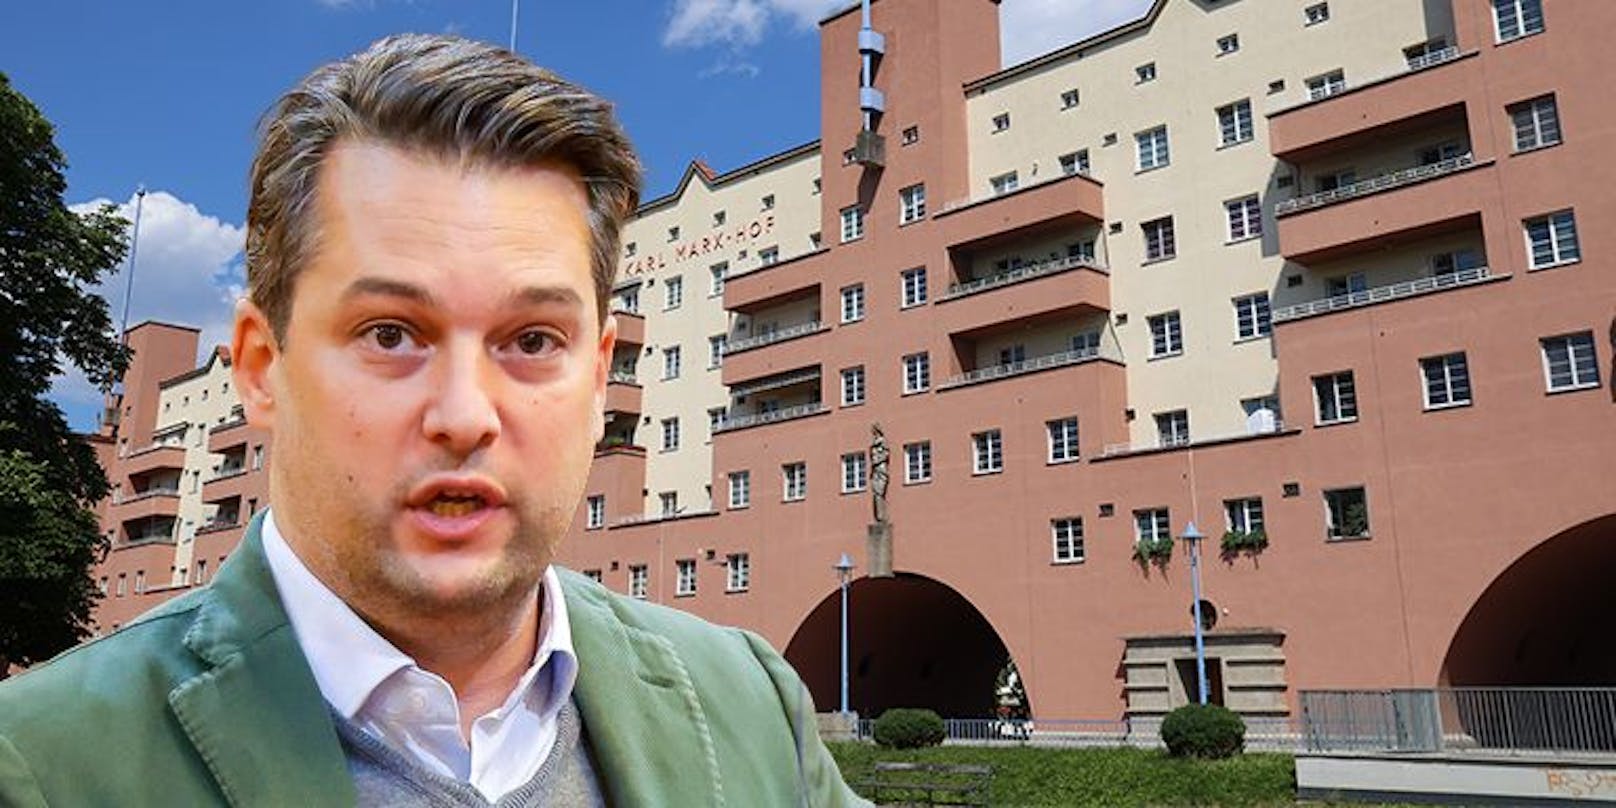 FPÖ-Knaller! "Gemeinde-Wohnungen nur noch für Österreicher"